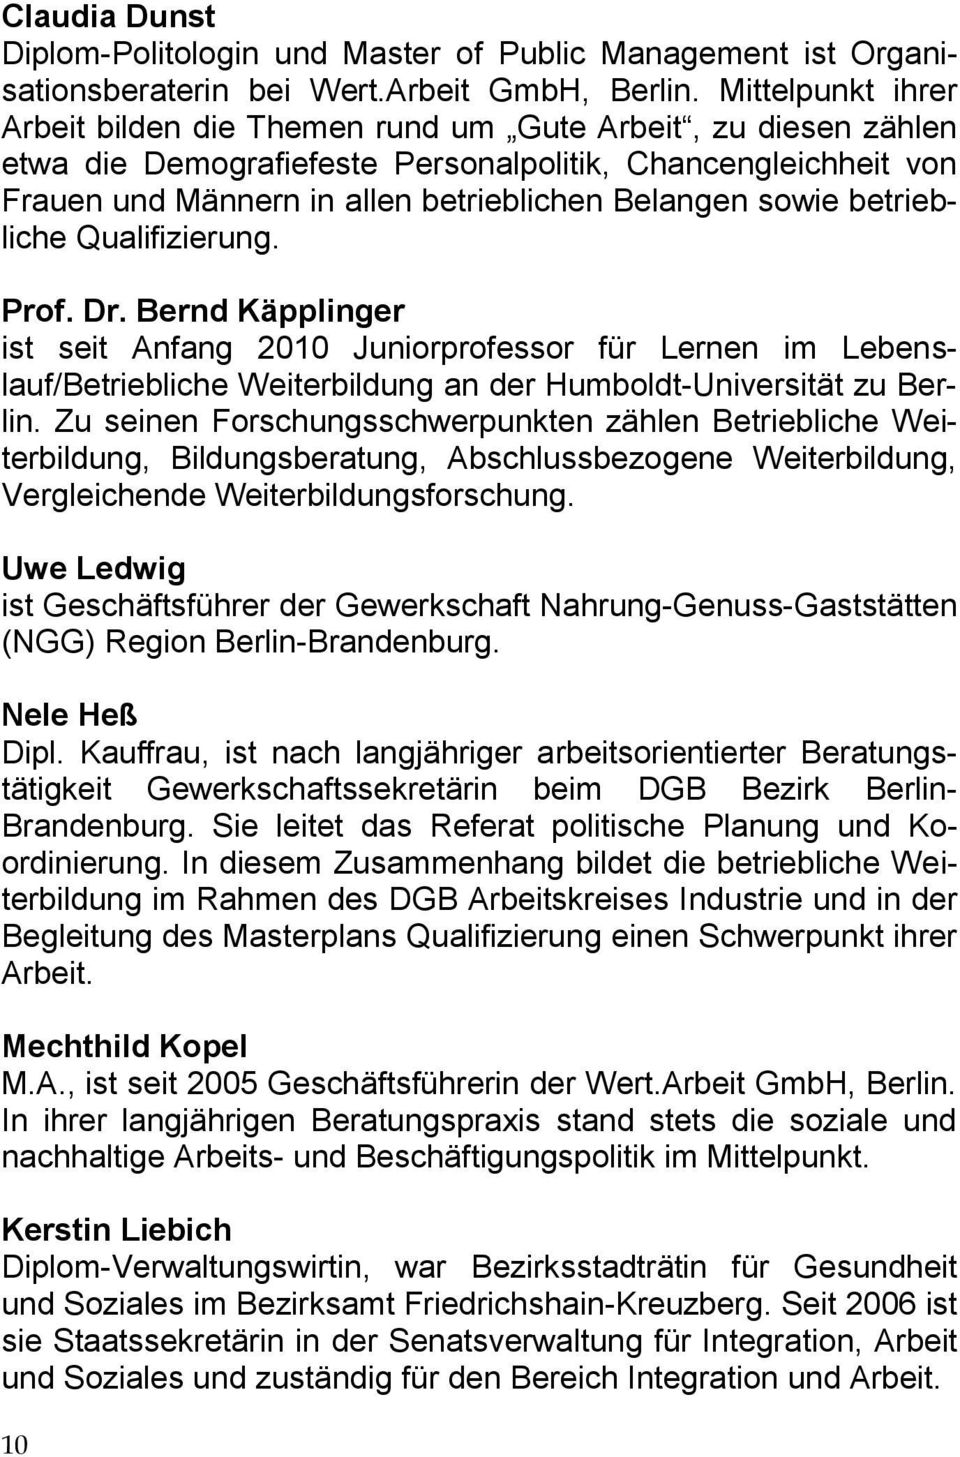 sowie betriebliche Qualifizierung. Prof. Dr. Bernd Käpplinger ist seit Anfang 2010 Juniorprofessor für Lernen im Lebenslauf/Betriebliche Weiterbildung an der Humboldt-Universität zu Berlin.